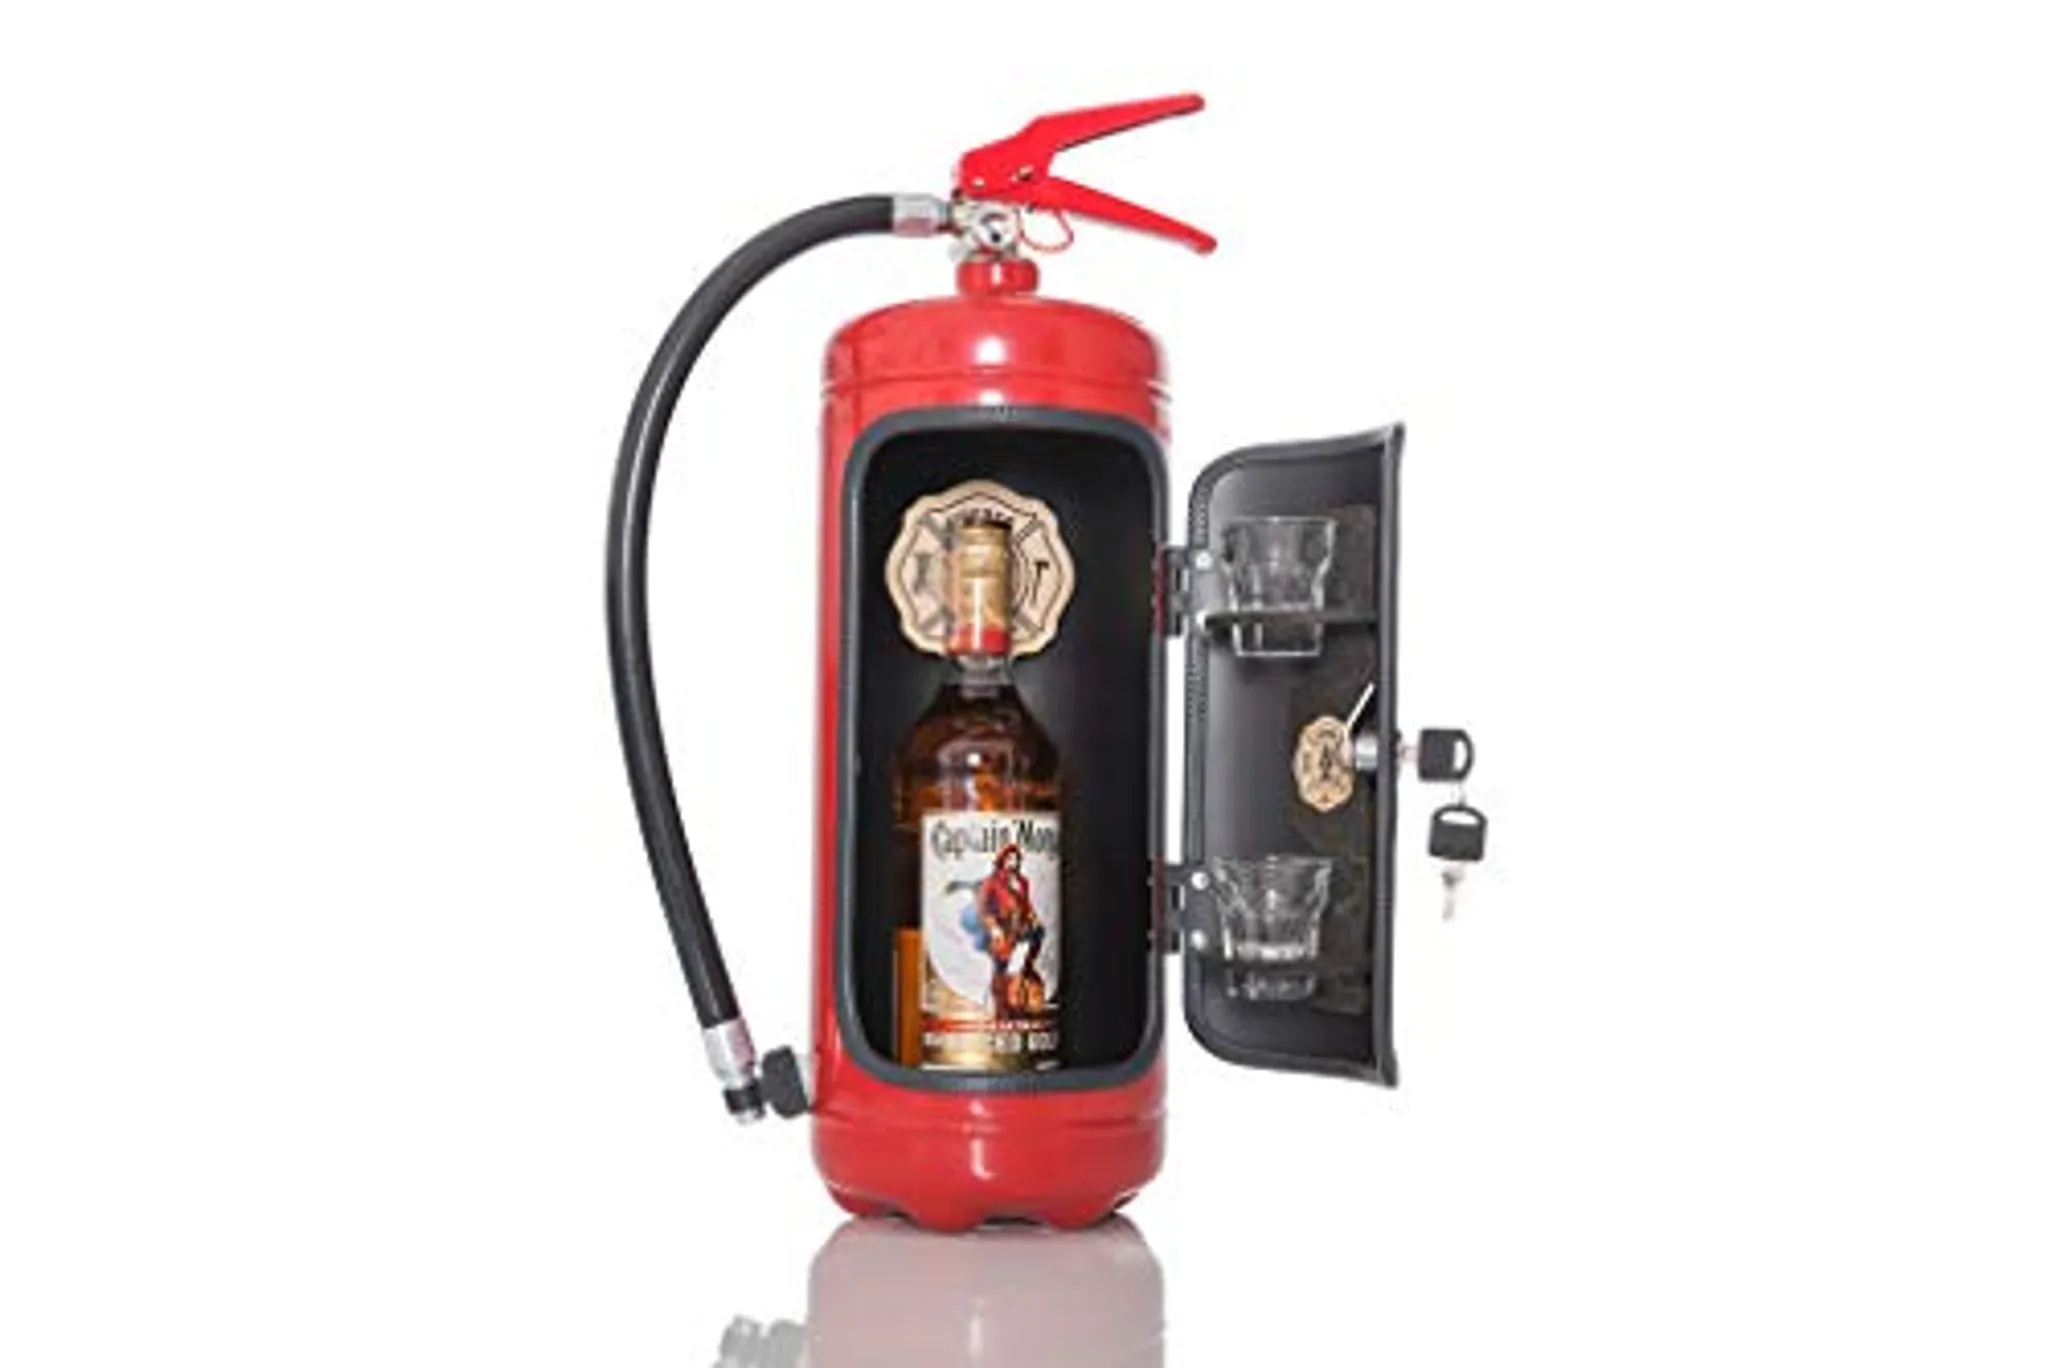 Die Firebar in Schwarz- Die Minibar für Feuerwehrler - Dekoratio